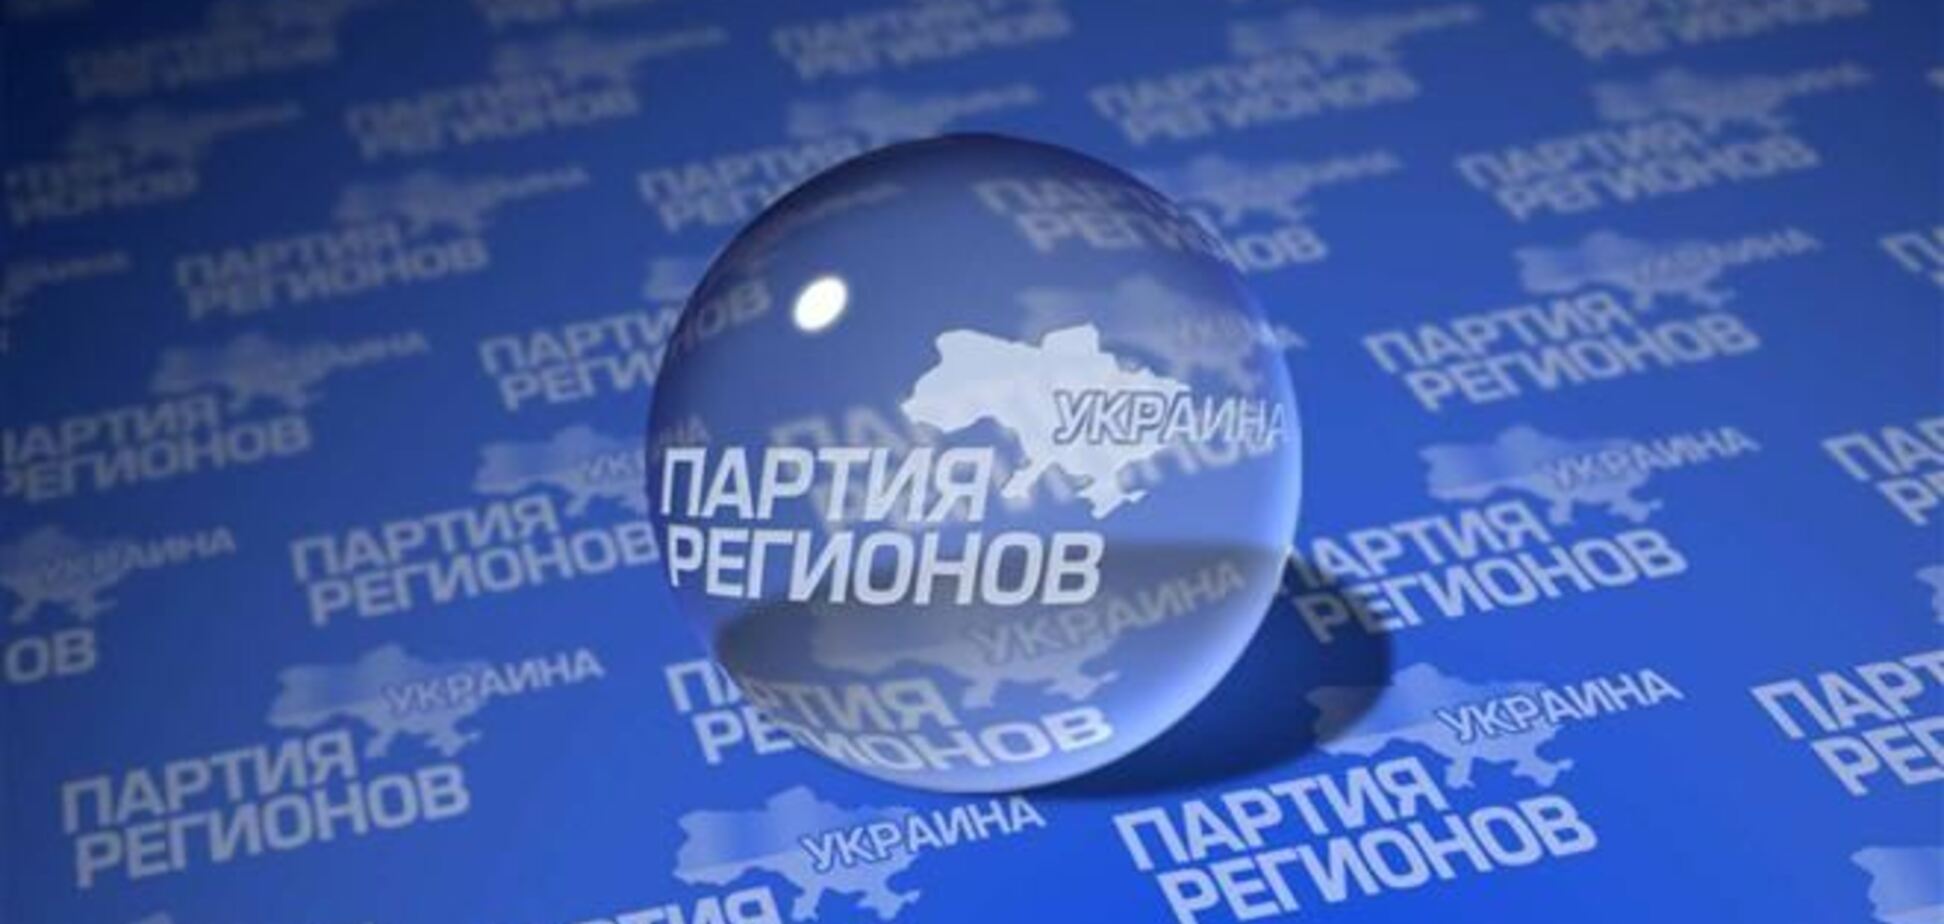 Регіонали створили робочу групу з виведення України з кризи